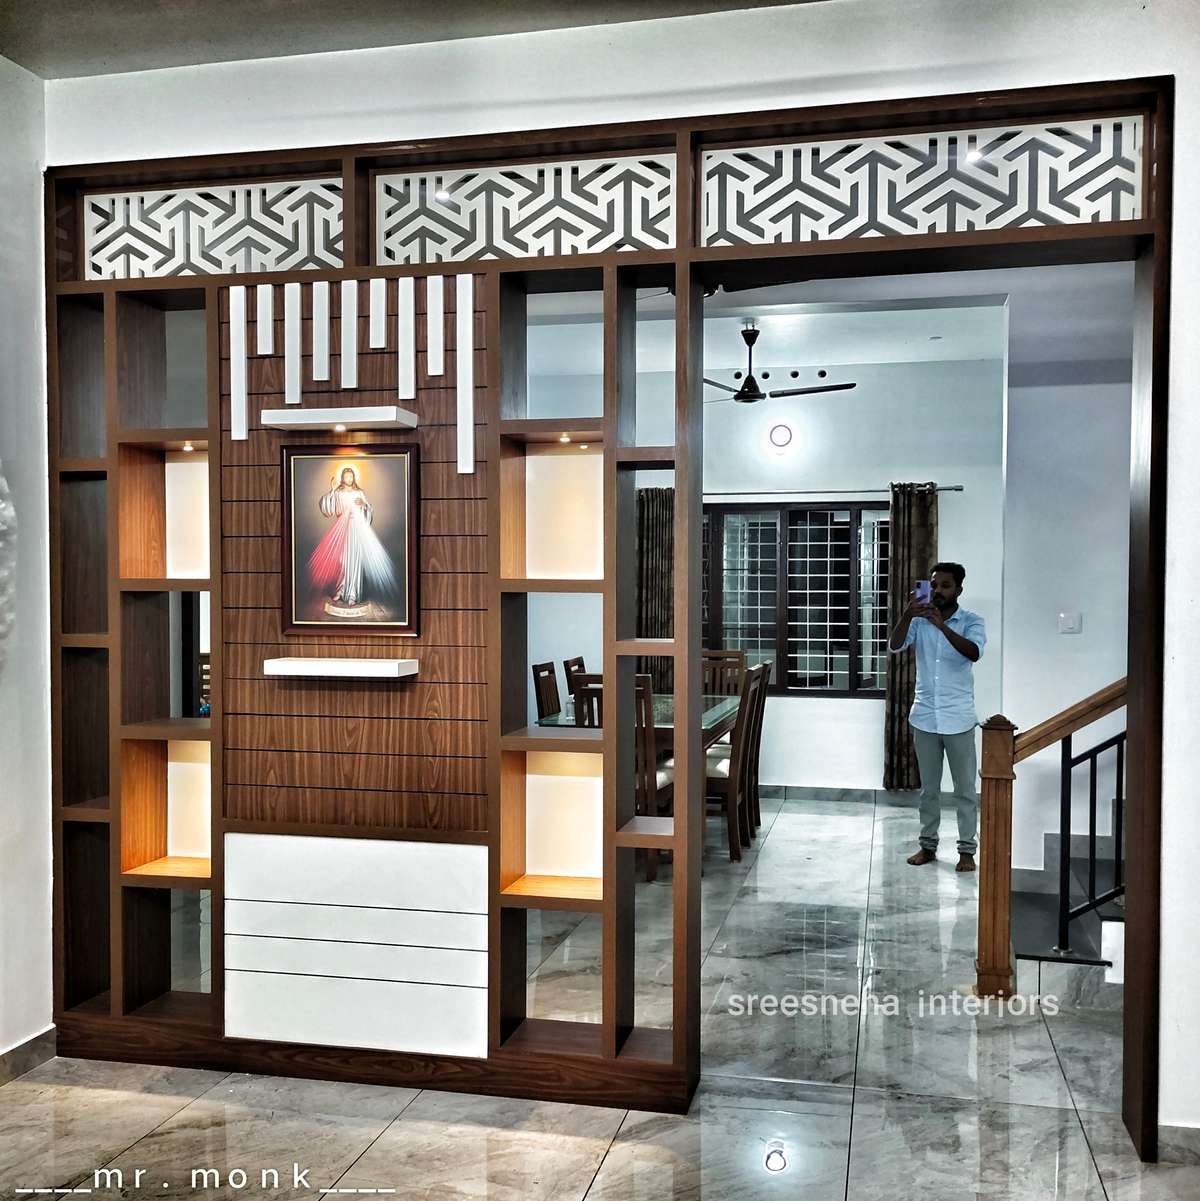 Lighting, Prayer Room, Storage Designs by Interior Designer SREESNEHA INTERIORS, Kottayam | Kolo